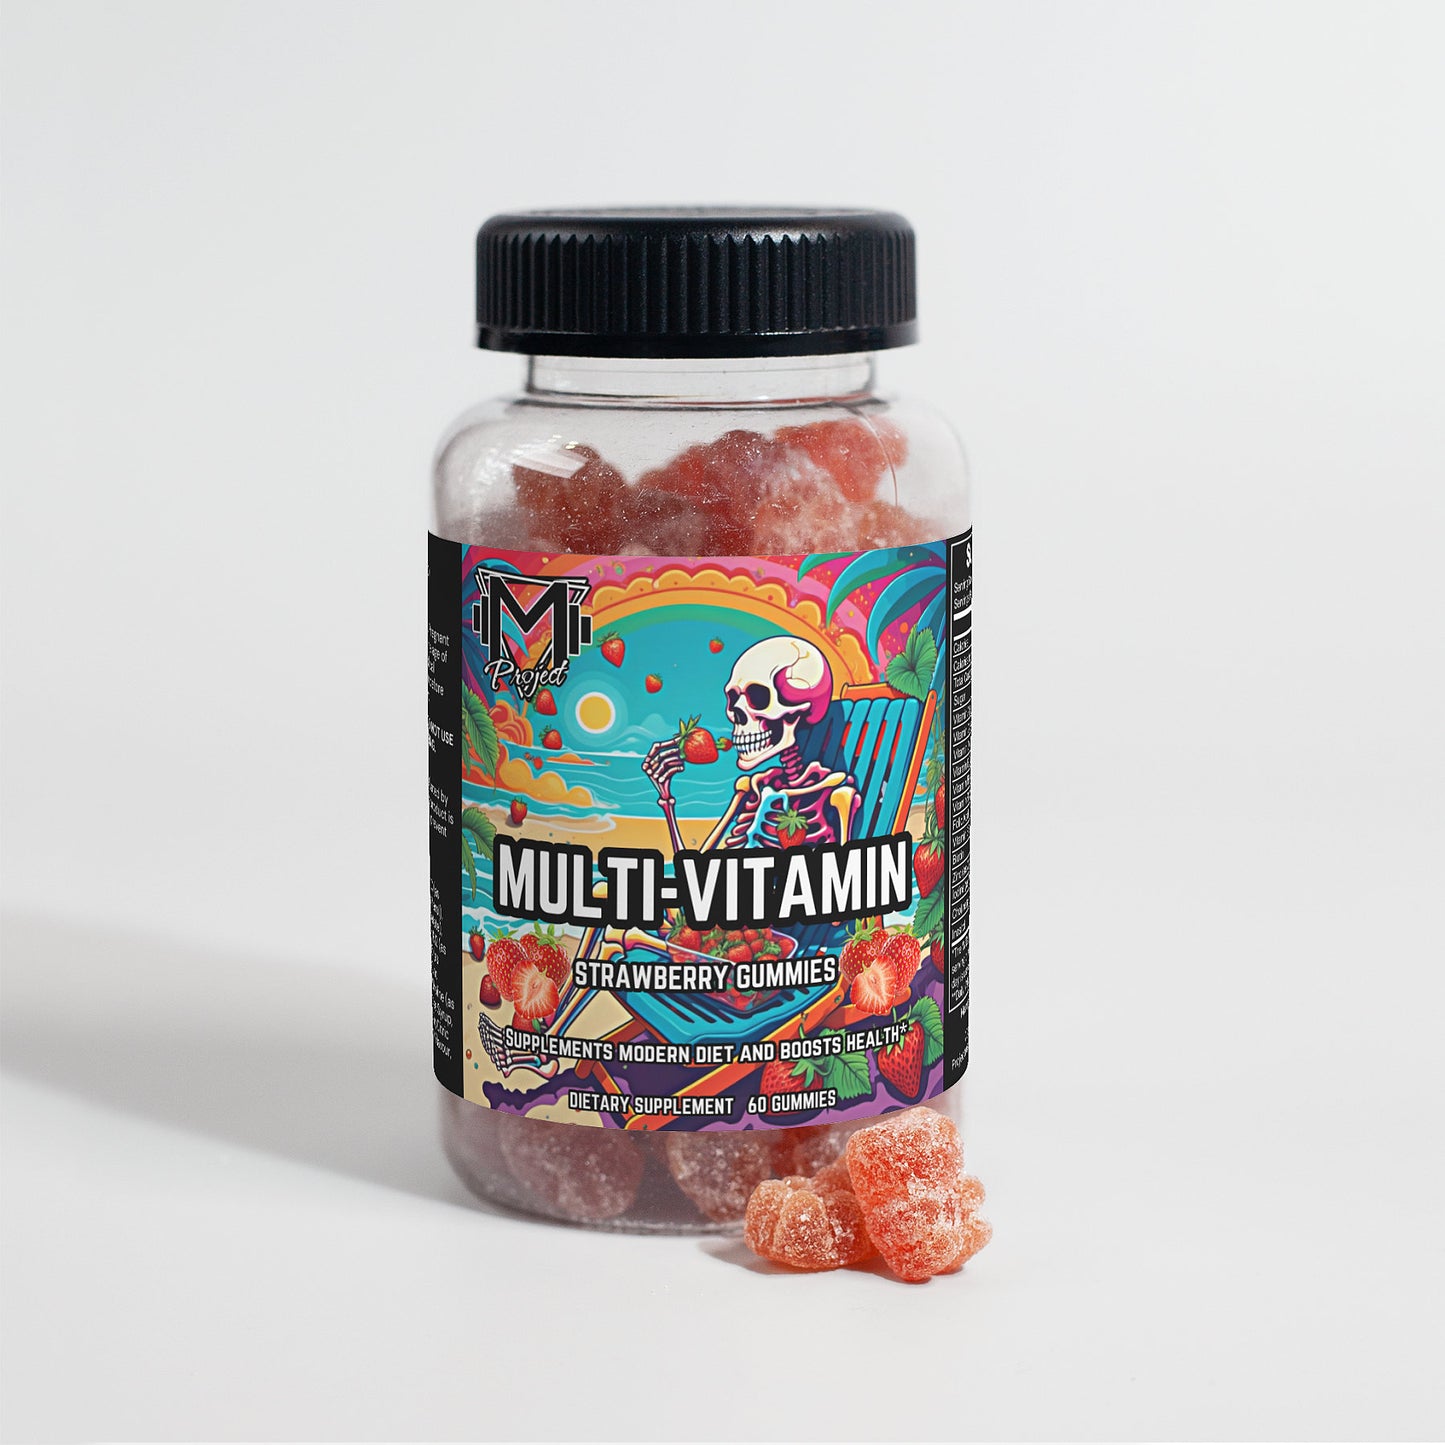 Project M Multivitamin Gummies